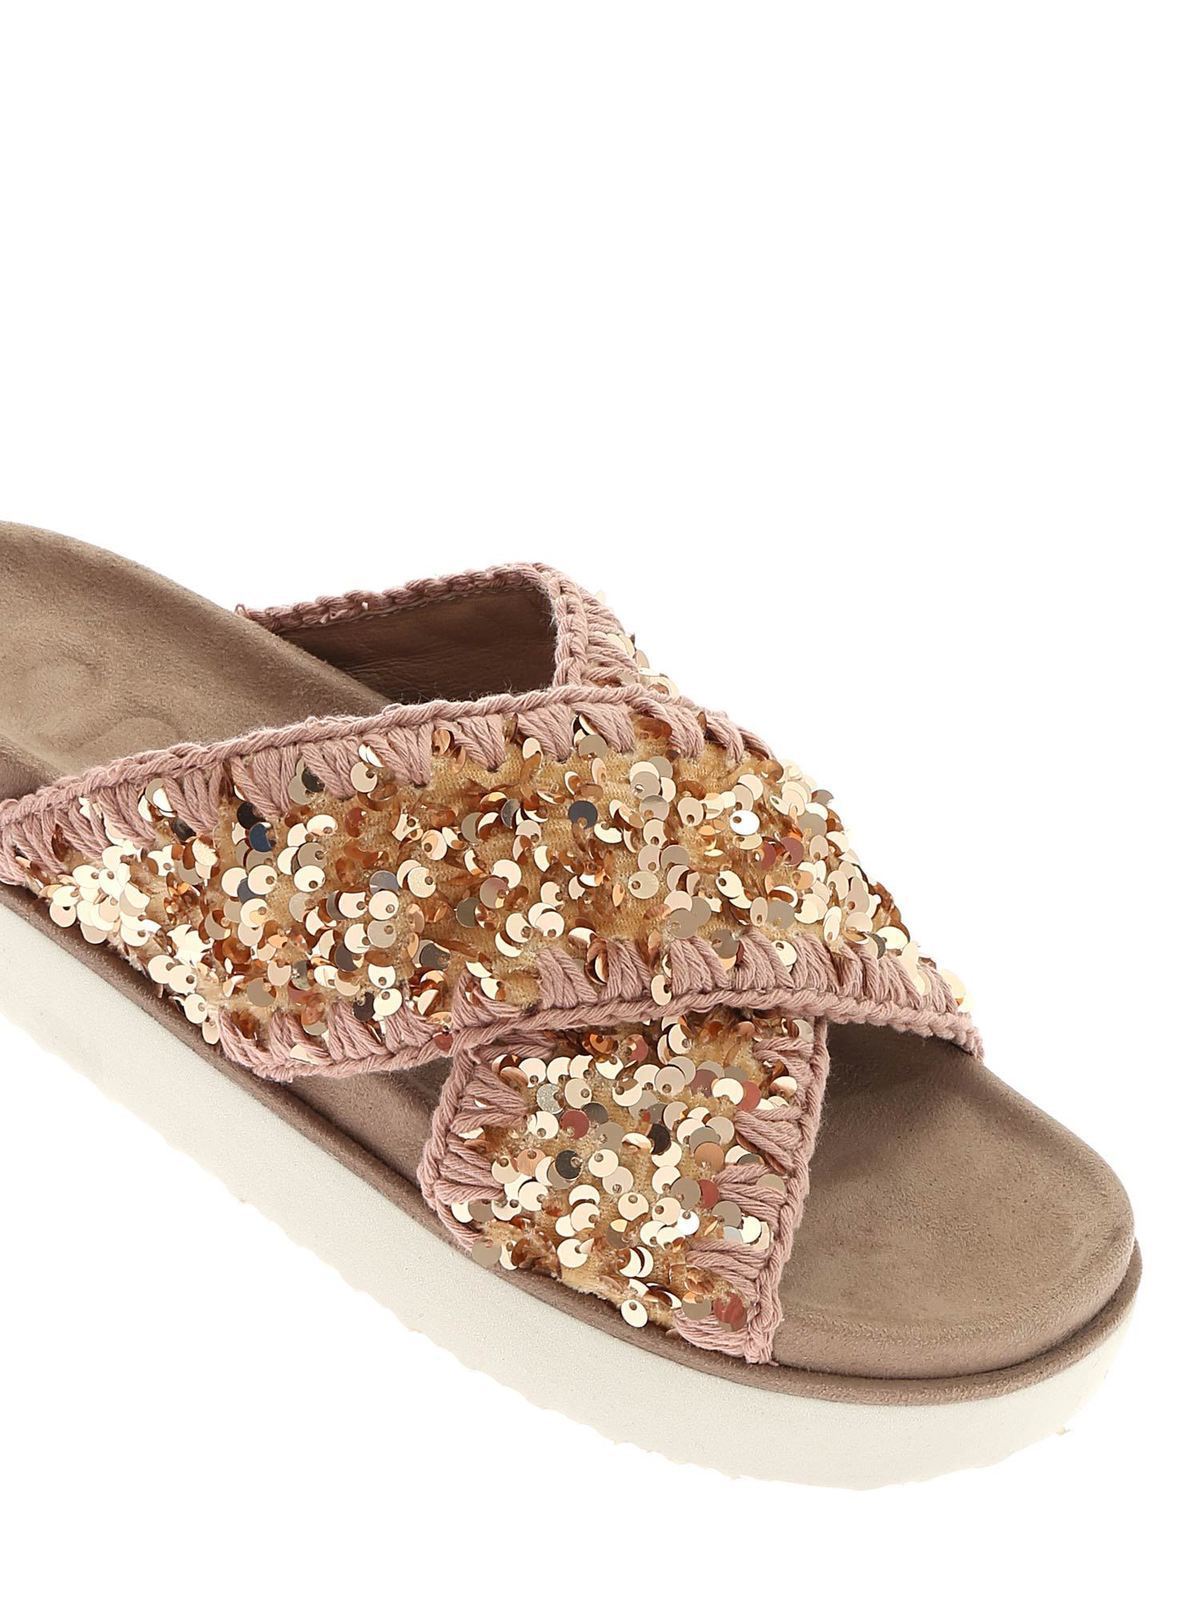 restjes magie In de naam Flip flops Mou - Criss-Cross Bio slippers in antique pink - MUSW251003GSEQRB